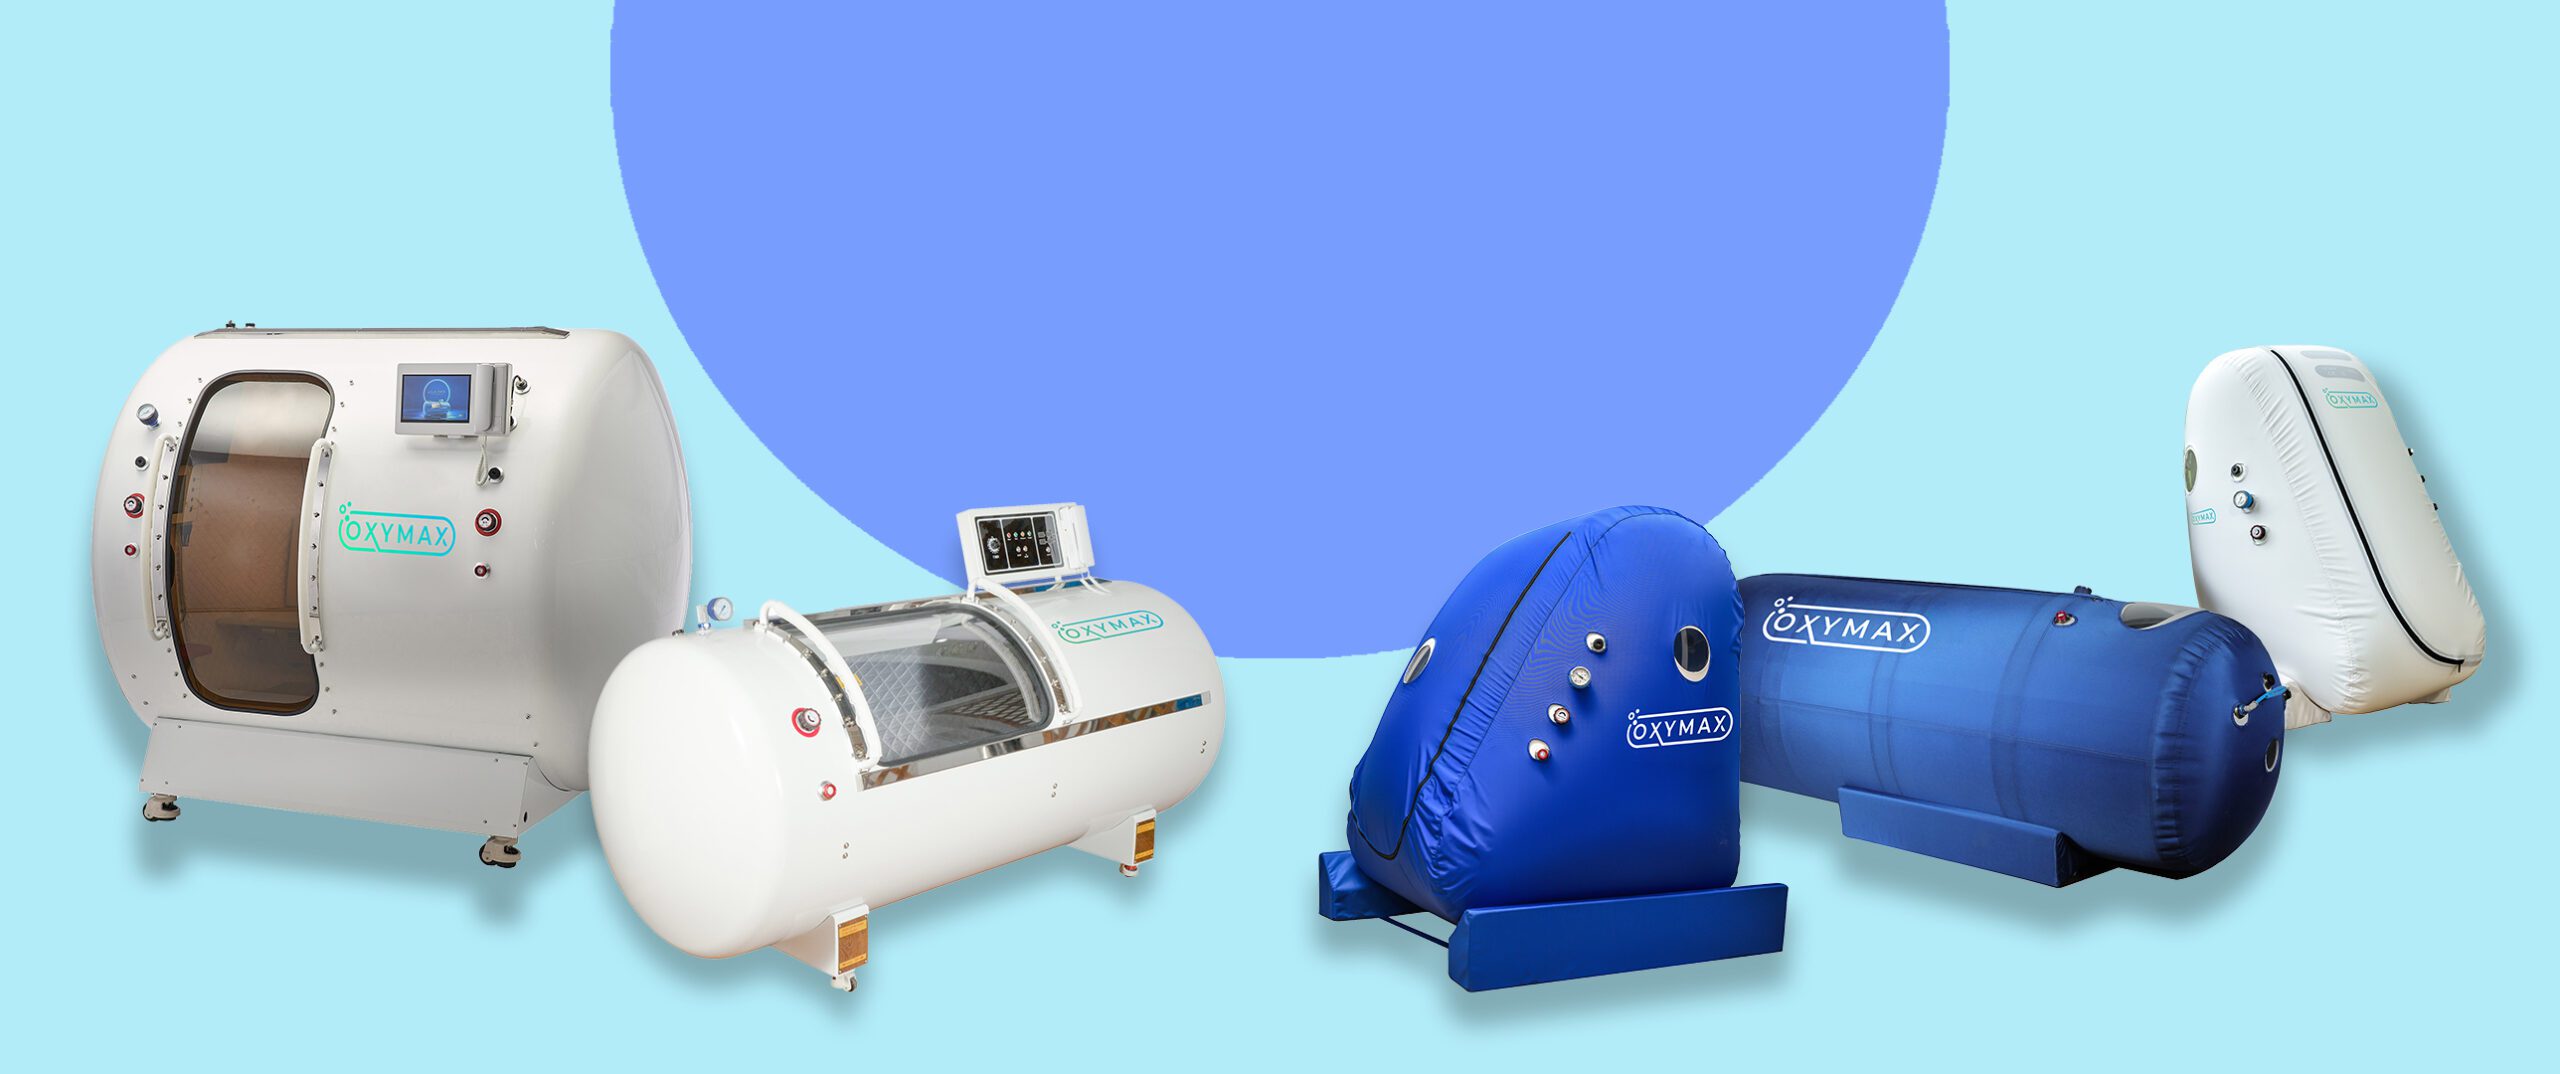 Verkauf, Lieferung, Wartung von Kammern und Geräten zur hyperbaren Sauerstofftherapie mit neuen Technologien.